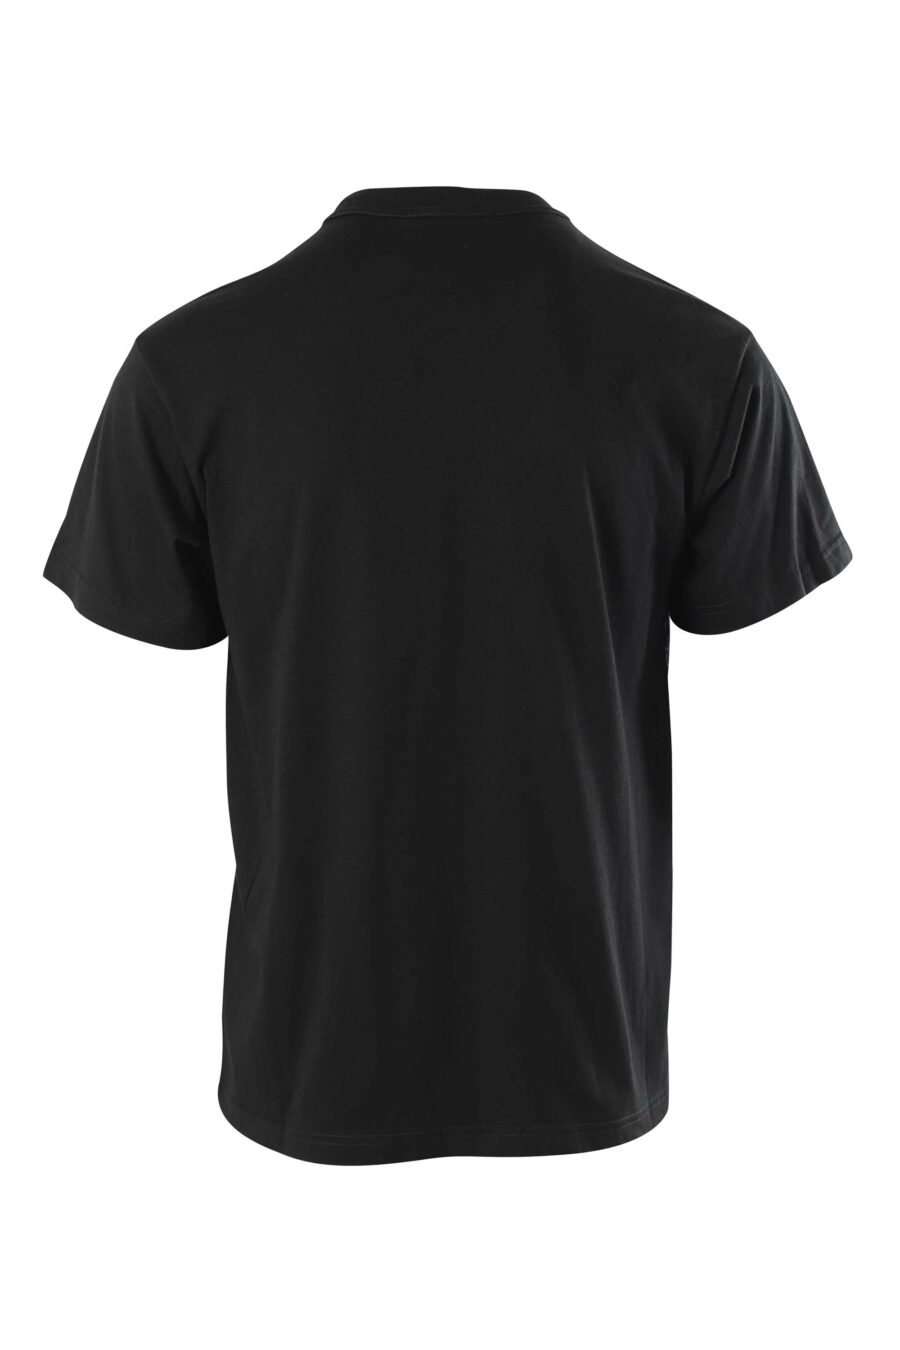 T-shirt cinzenta com maxilogo às riscas barrocas - 8052019323467 2